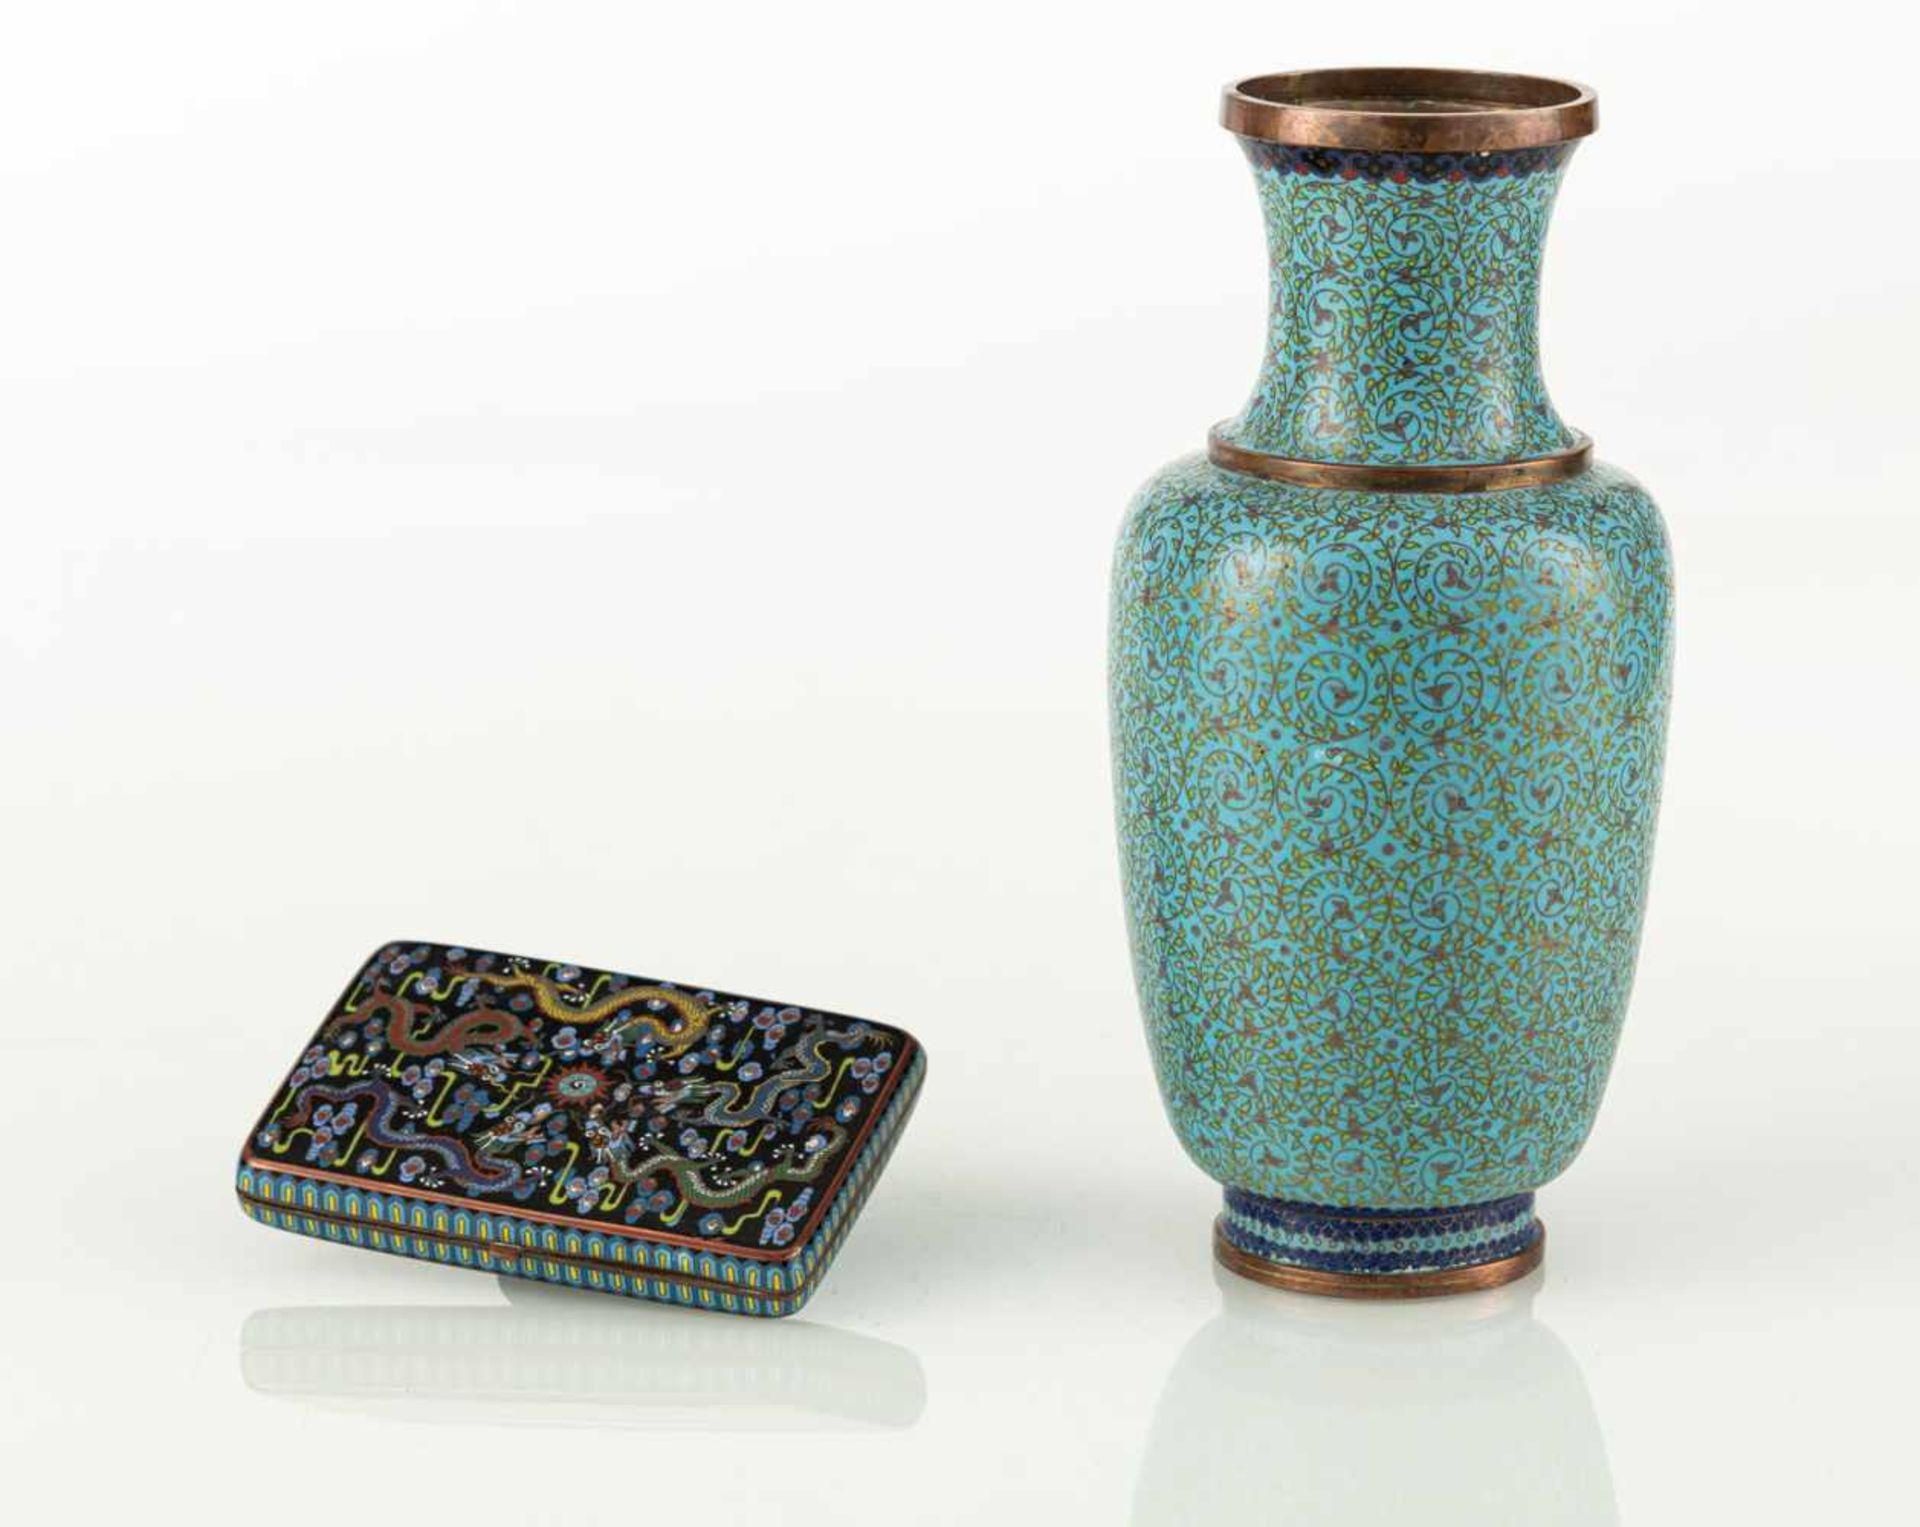 Cloisonné-Etui mit Drachendekor und Cloisonné-Vase mit Spiralranken - Bild 2 aus 2